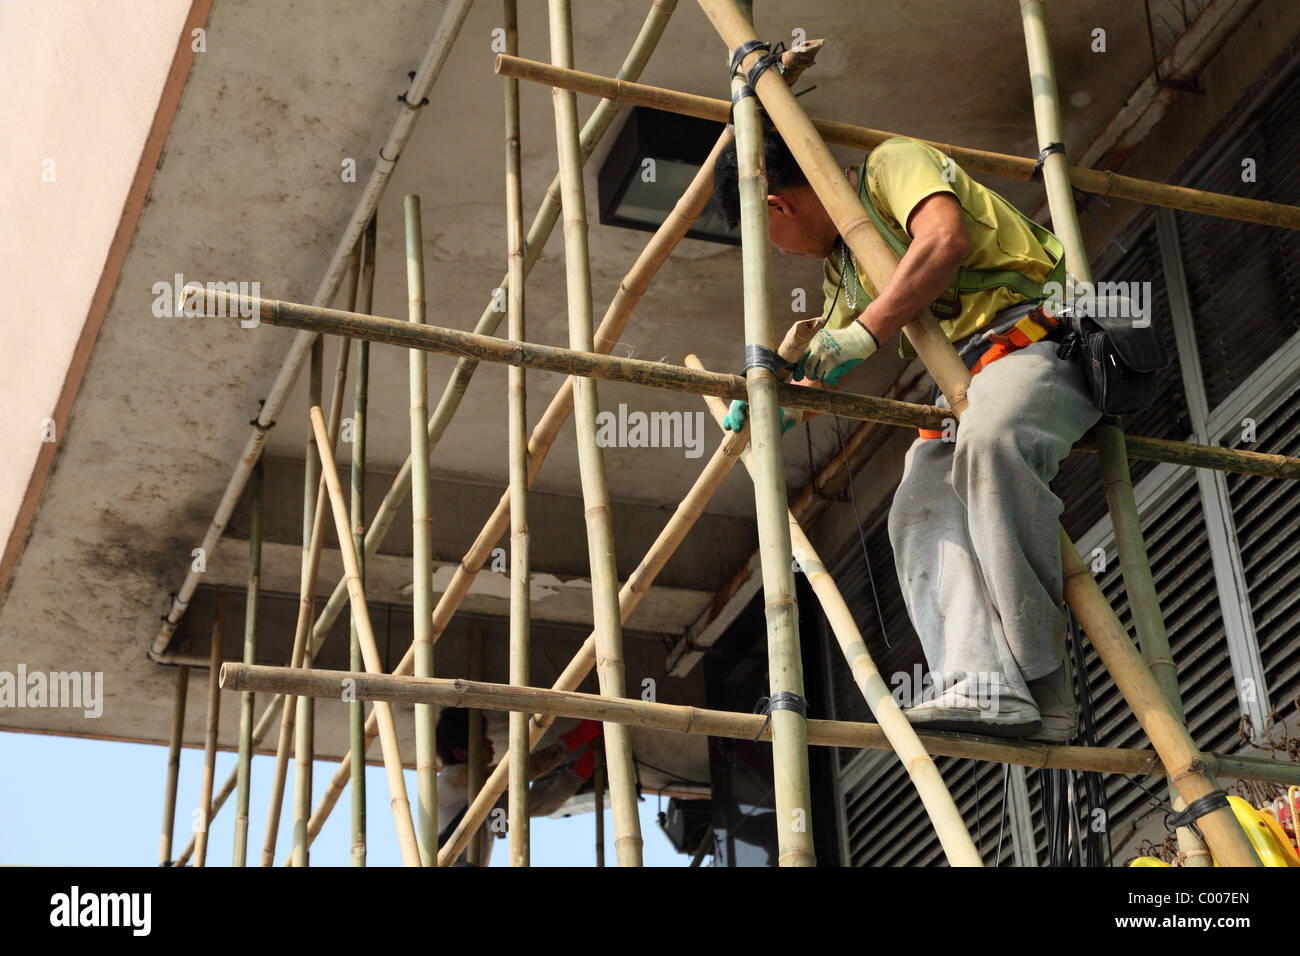 Bamboo scaffolding in Hong Kong Stock Photo